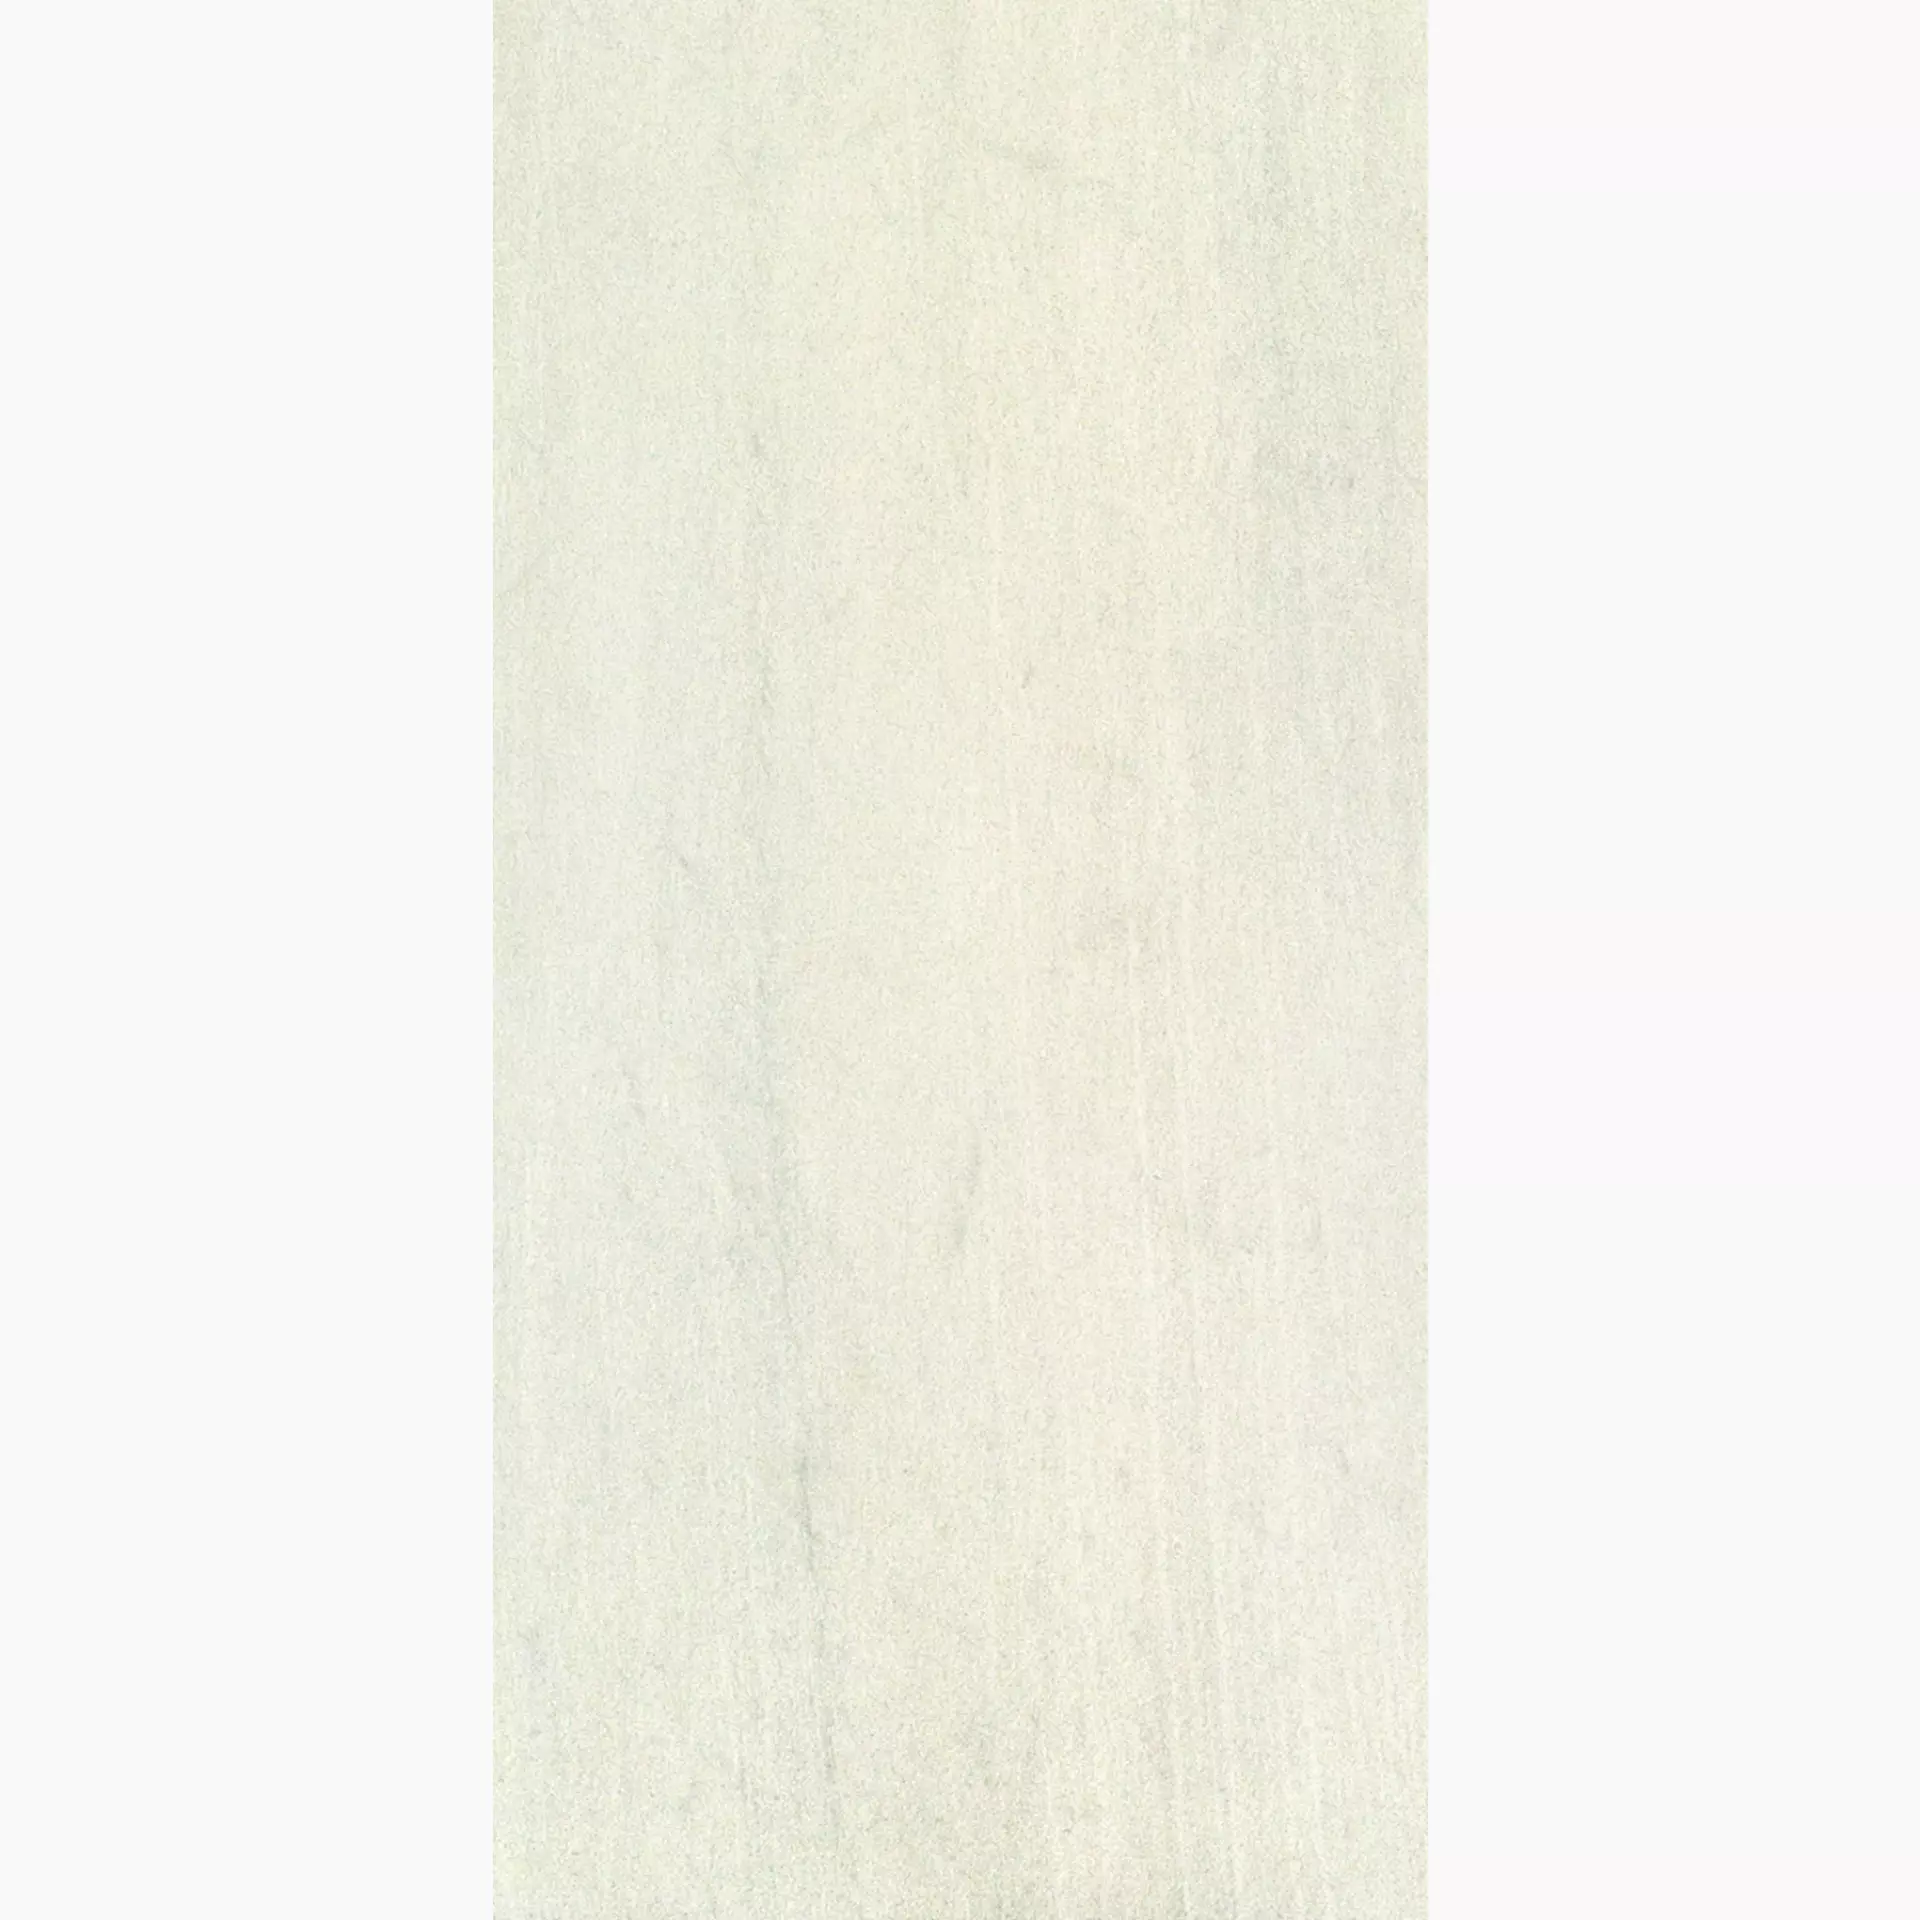 Ergon Stone Project White Naturale Falda E1DD 30x60cm rectified 9,5mm